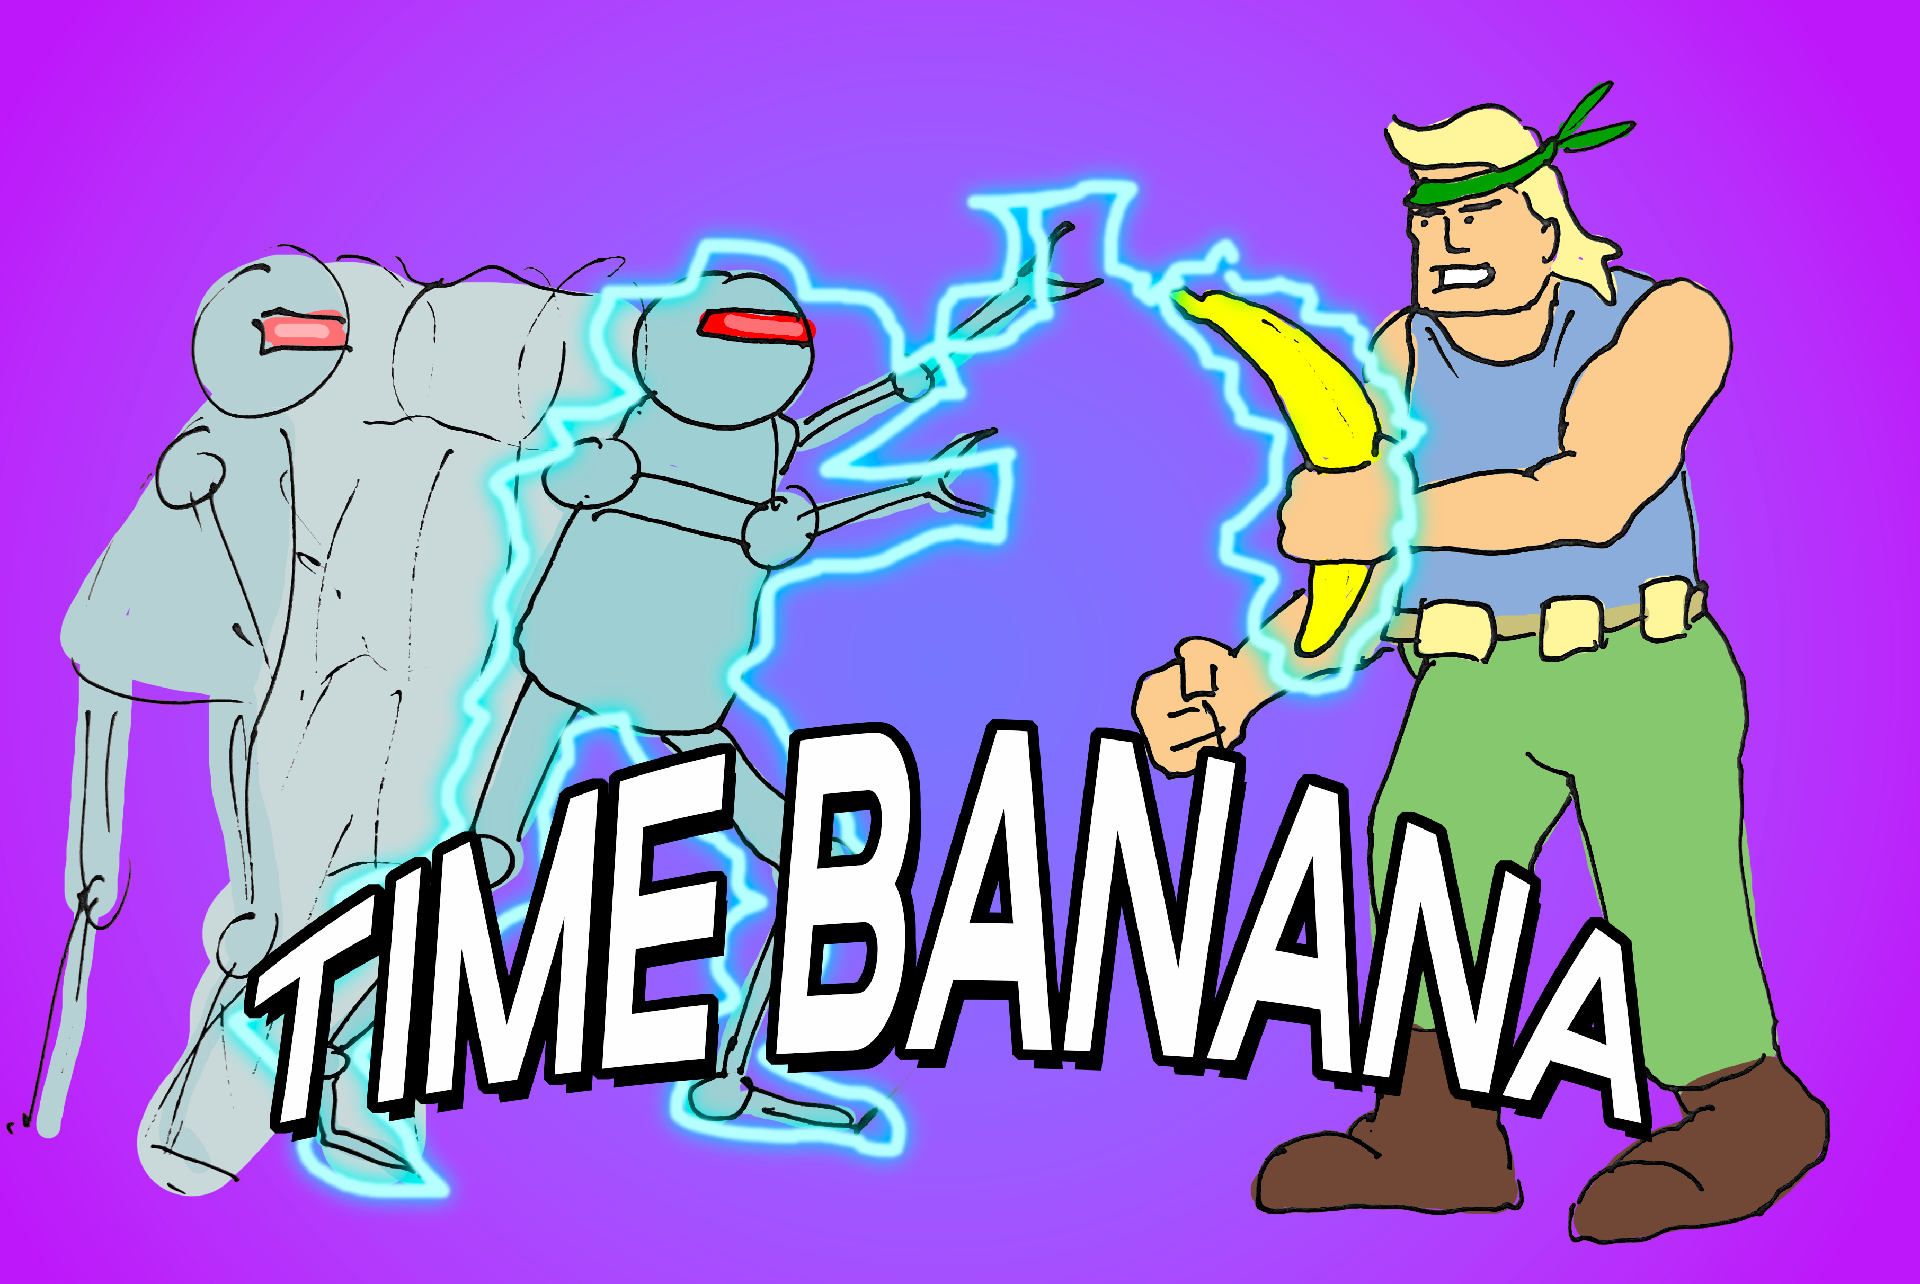 Time Banana